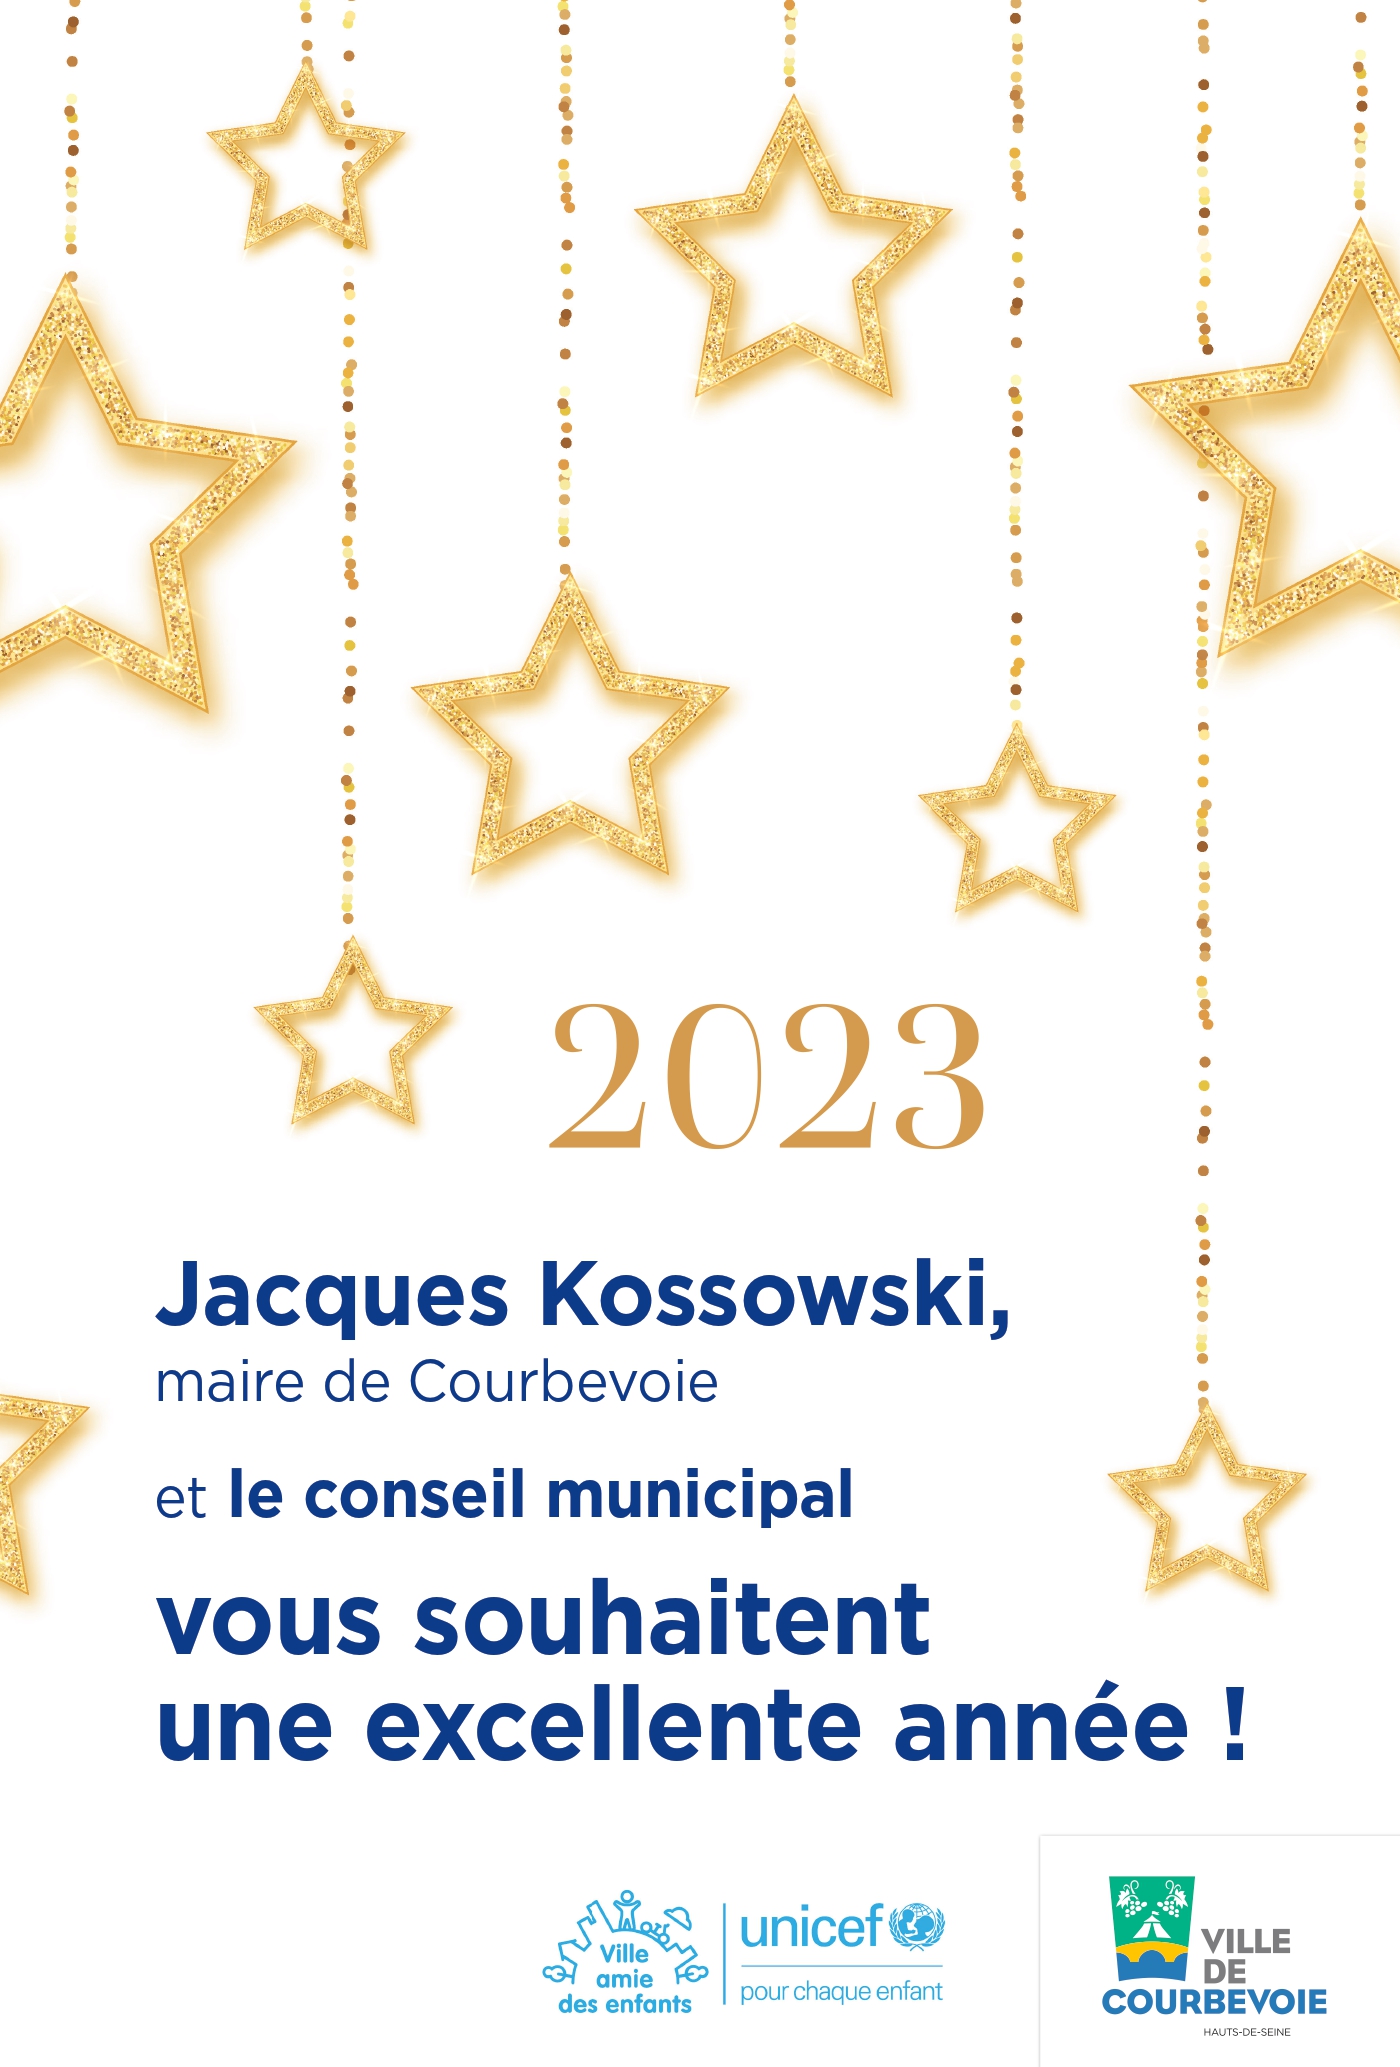 Les voeux de Jacques Kossowski pour l'année 2023